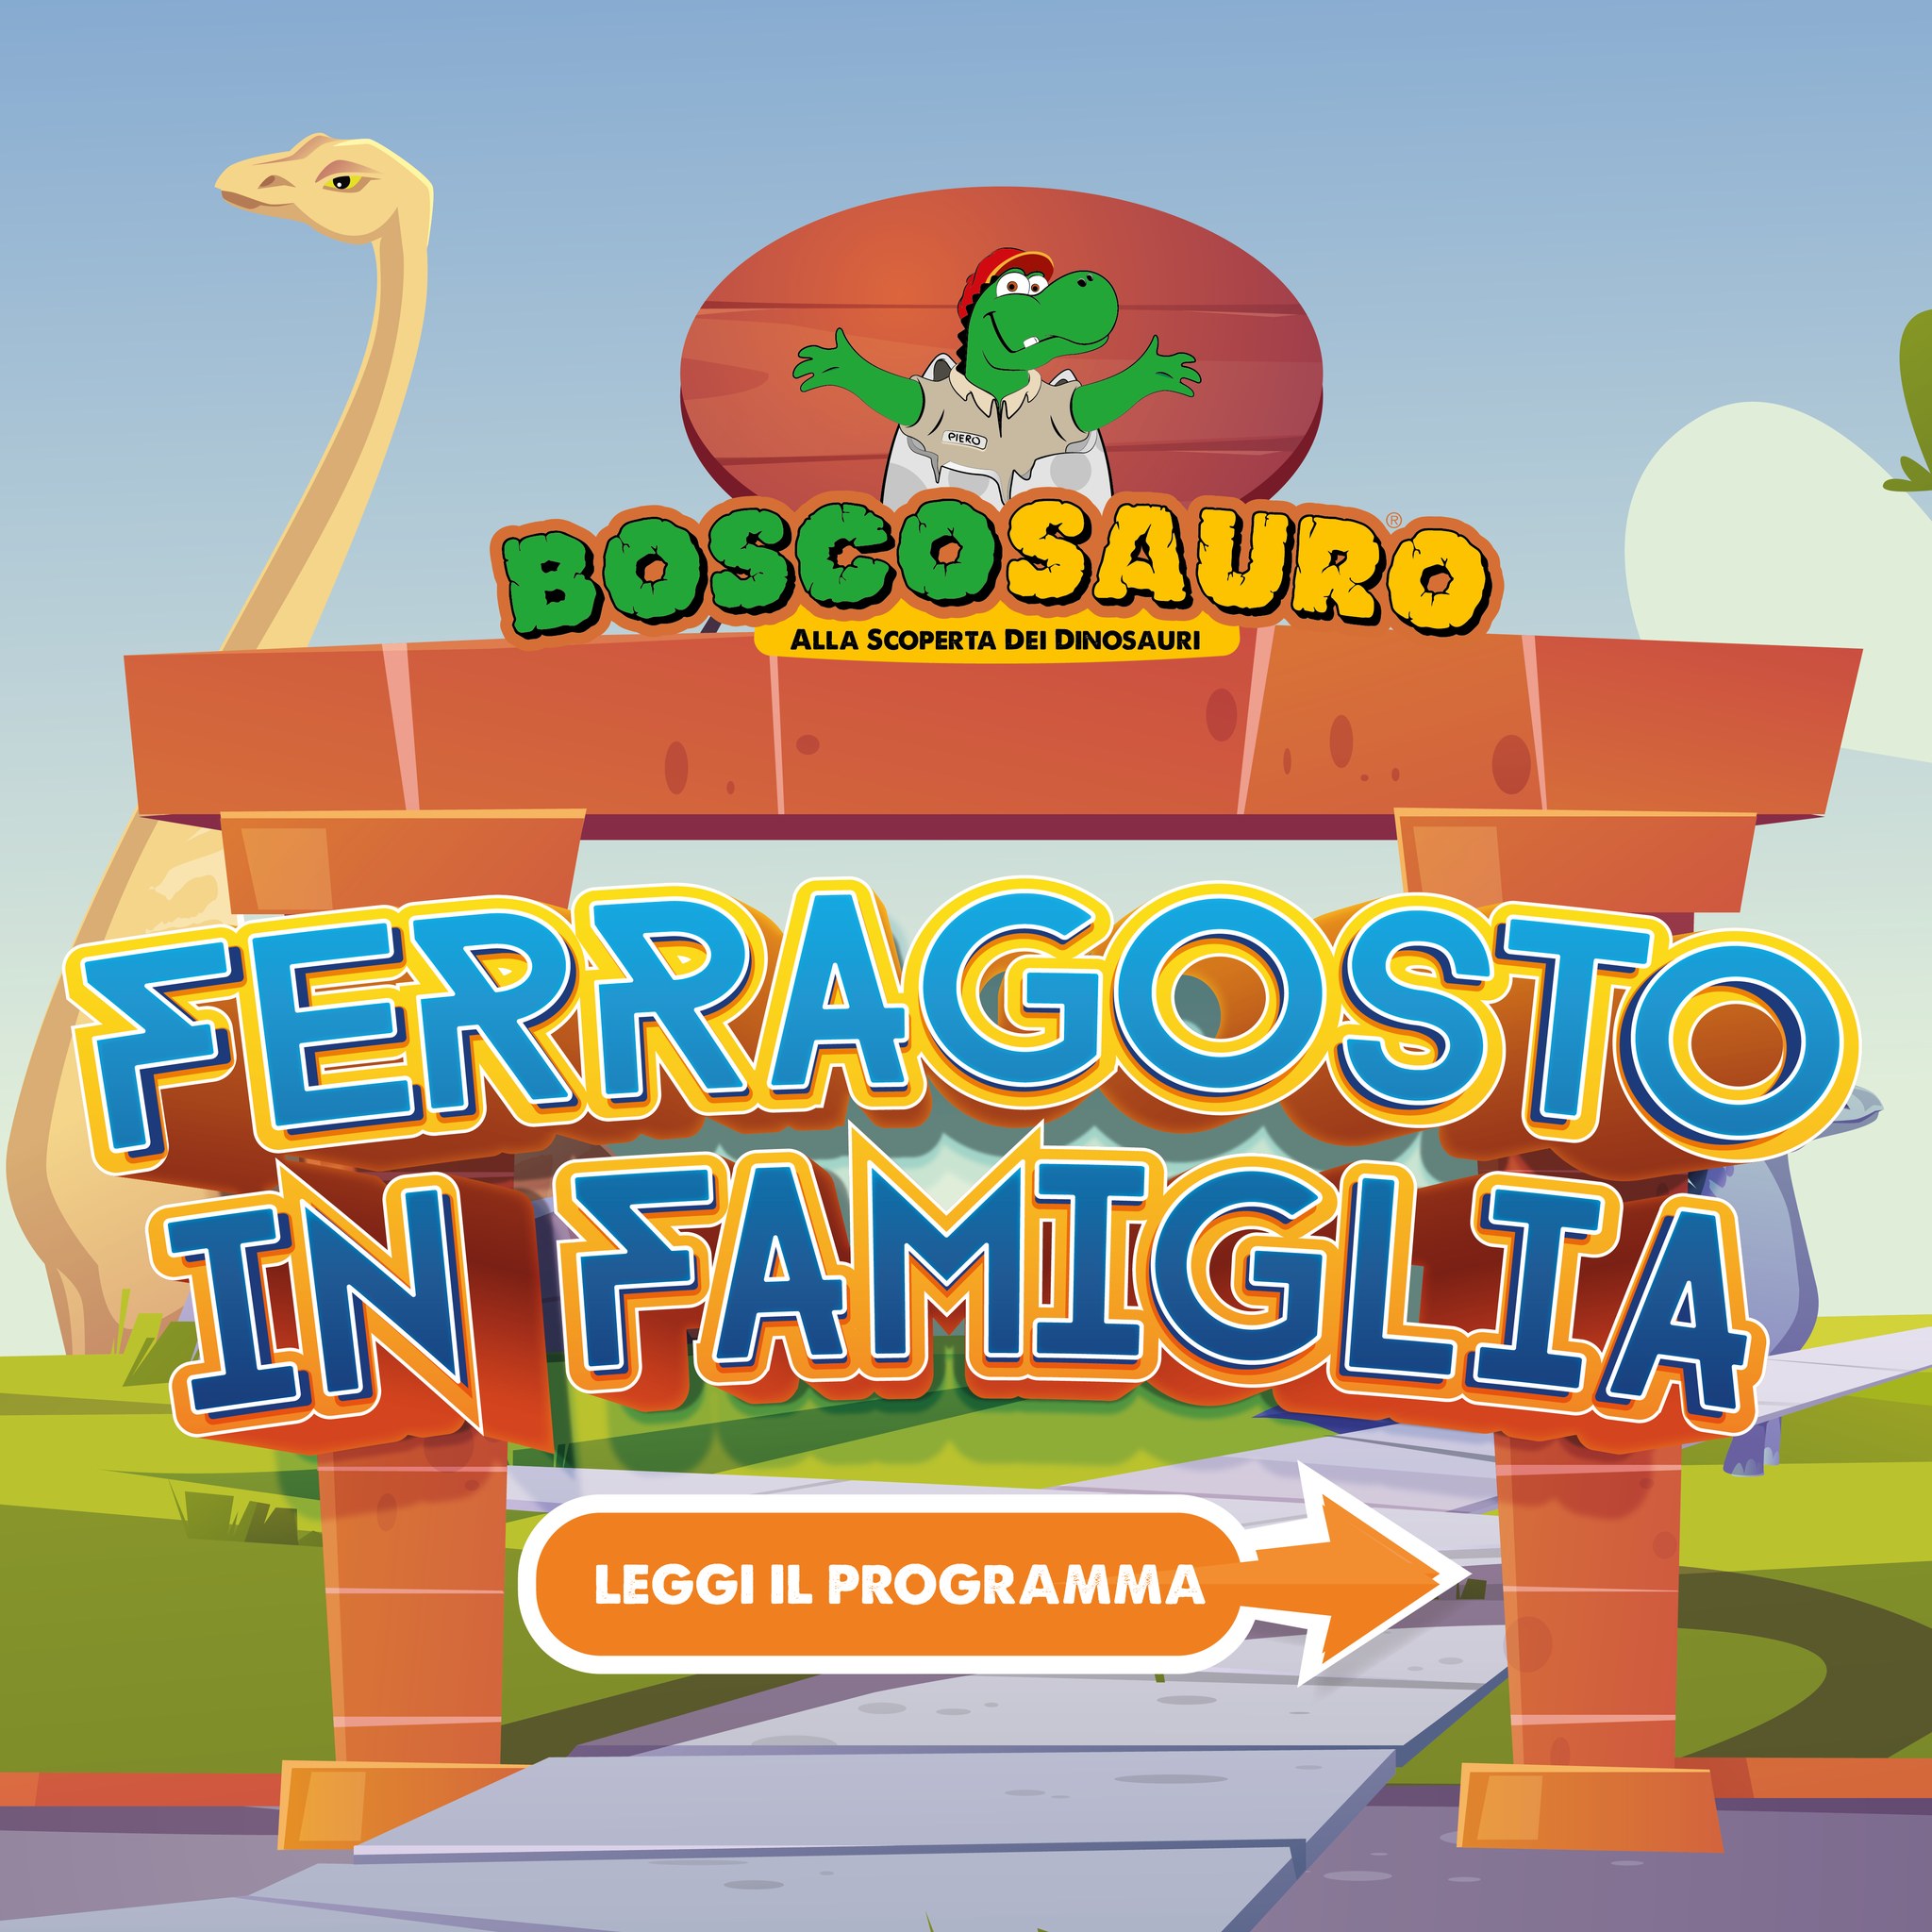 Boscosauro presents “Ferragosto in Famiglia”, a journey between science and entertainment